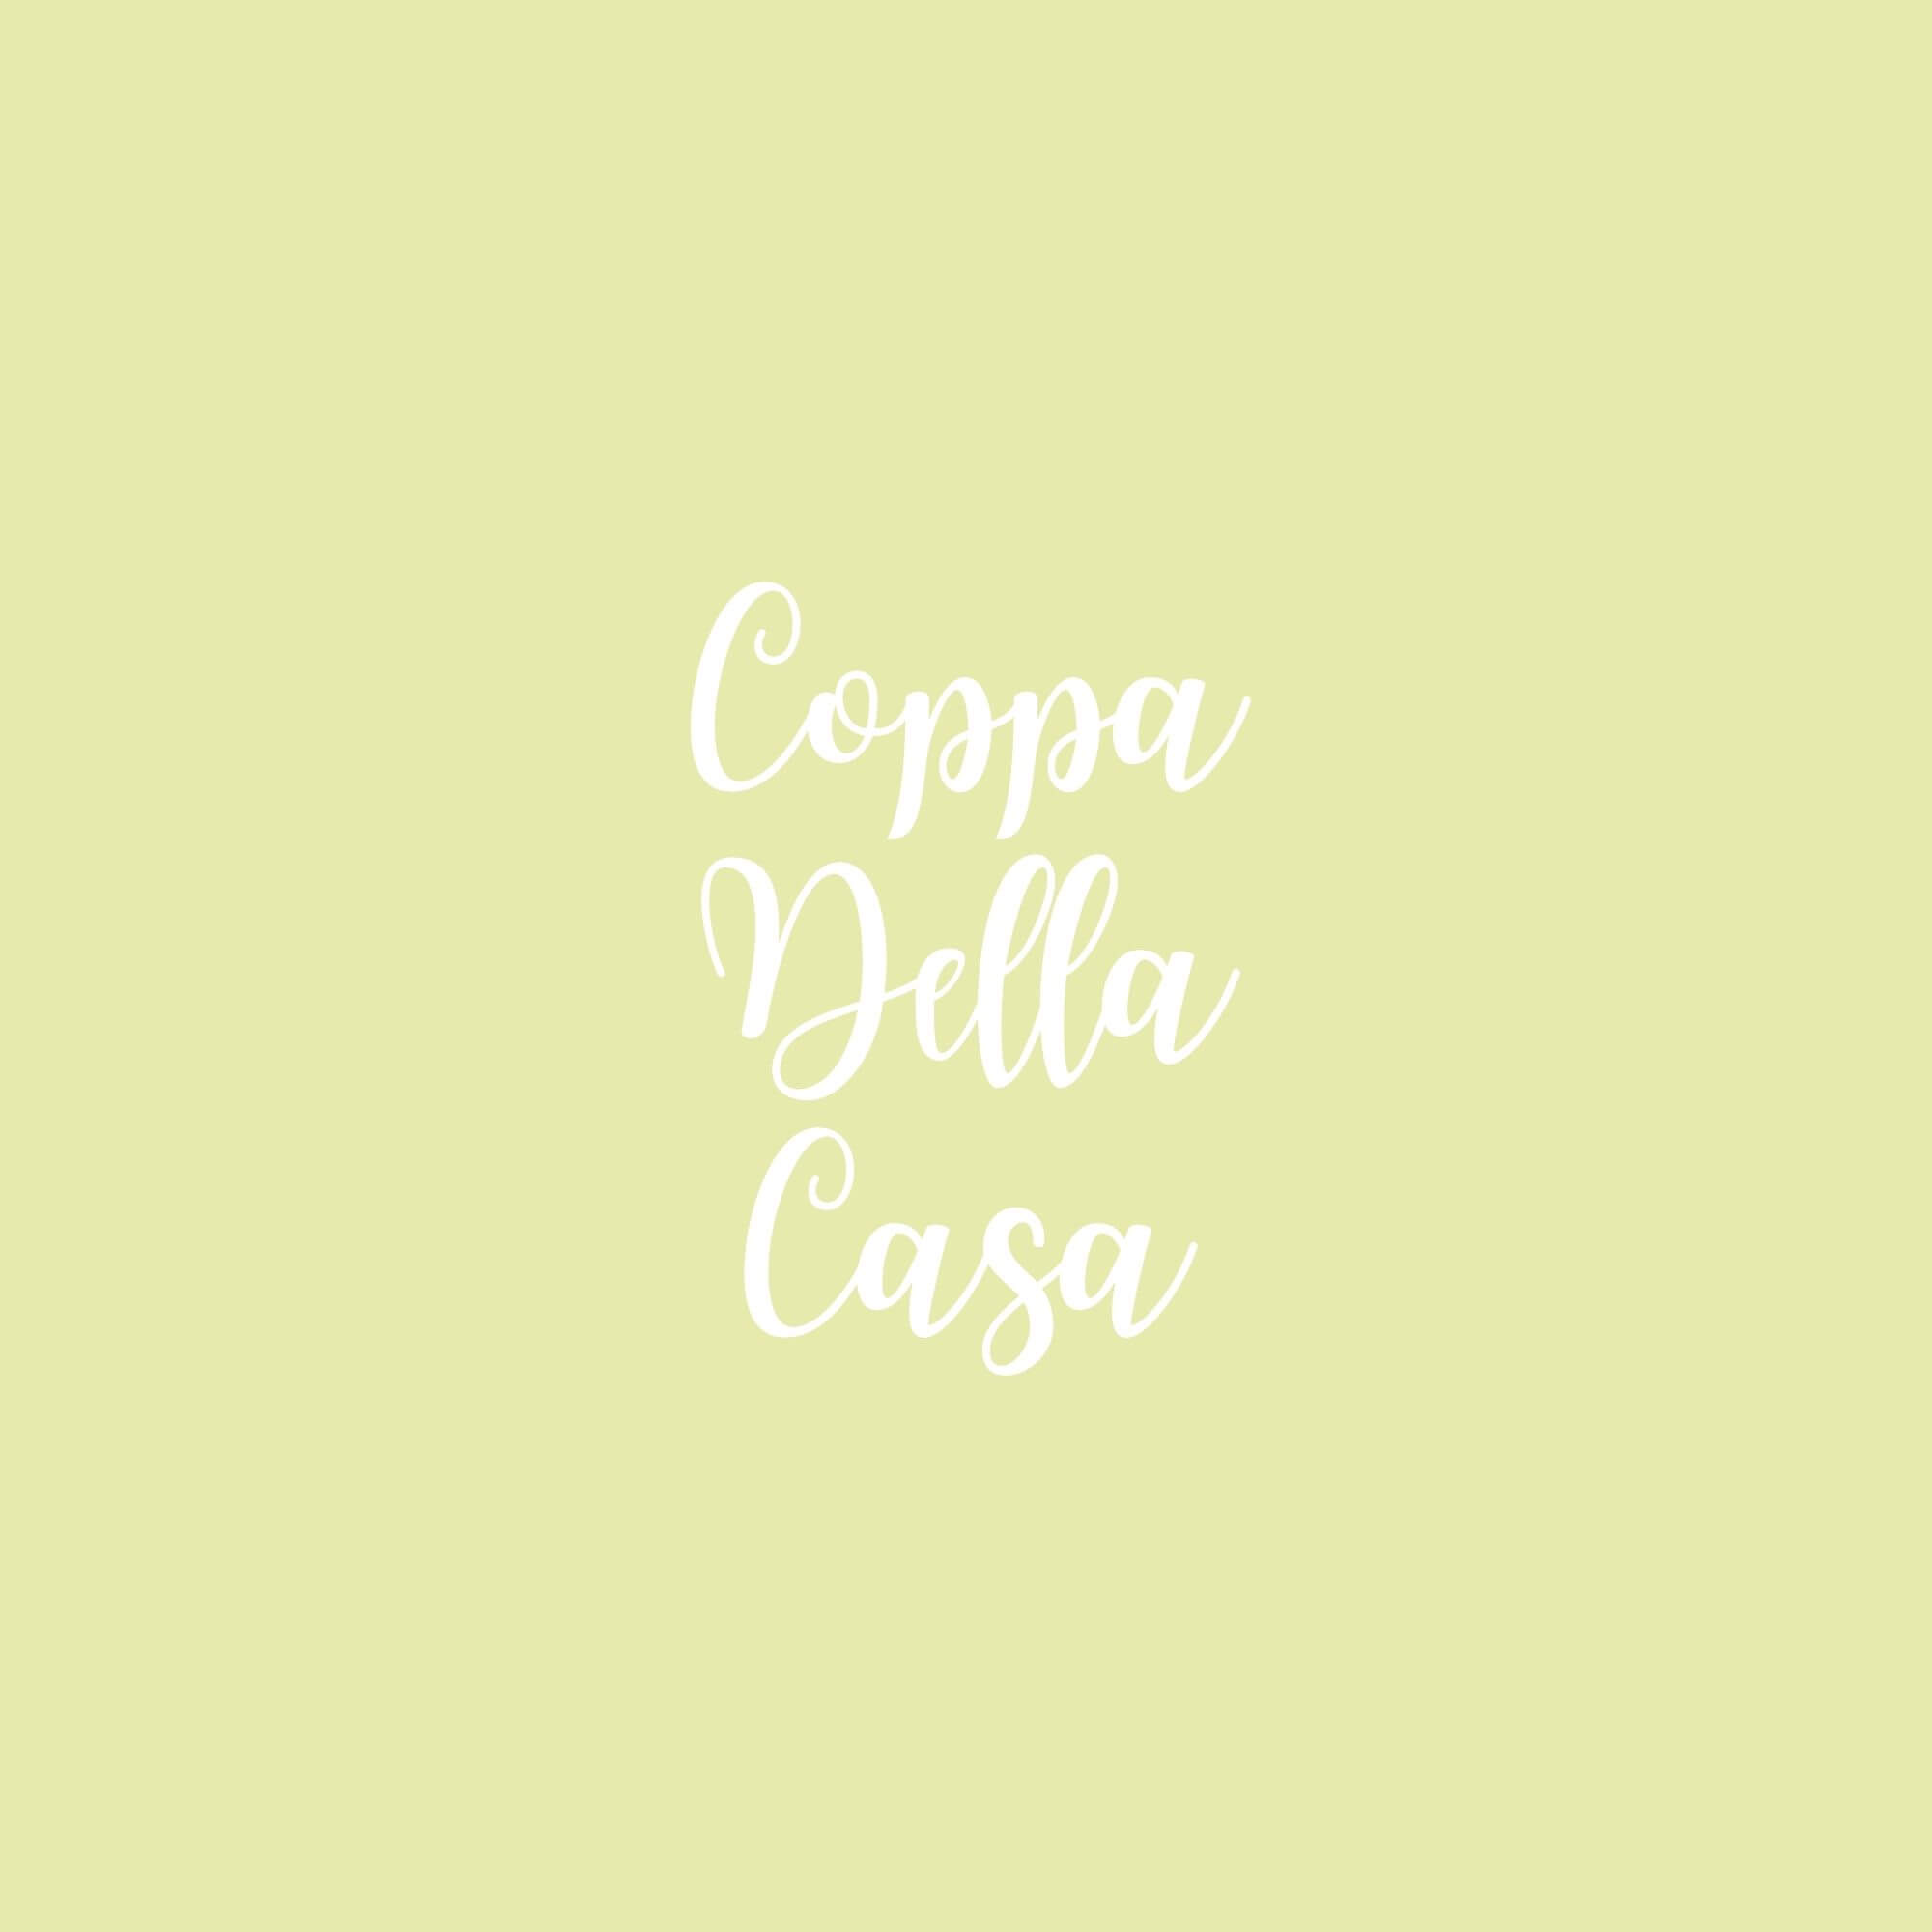 Coppa Della Casa